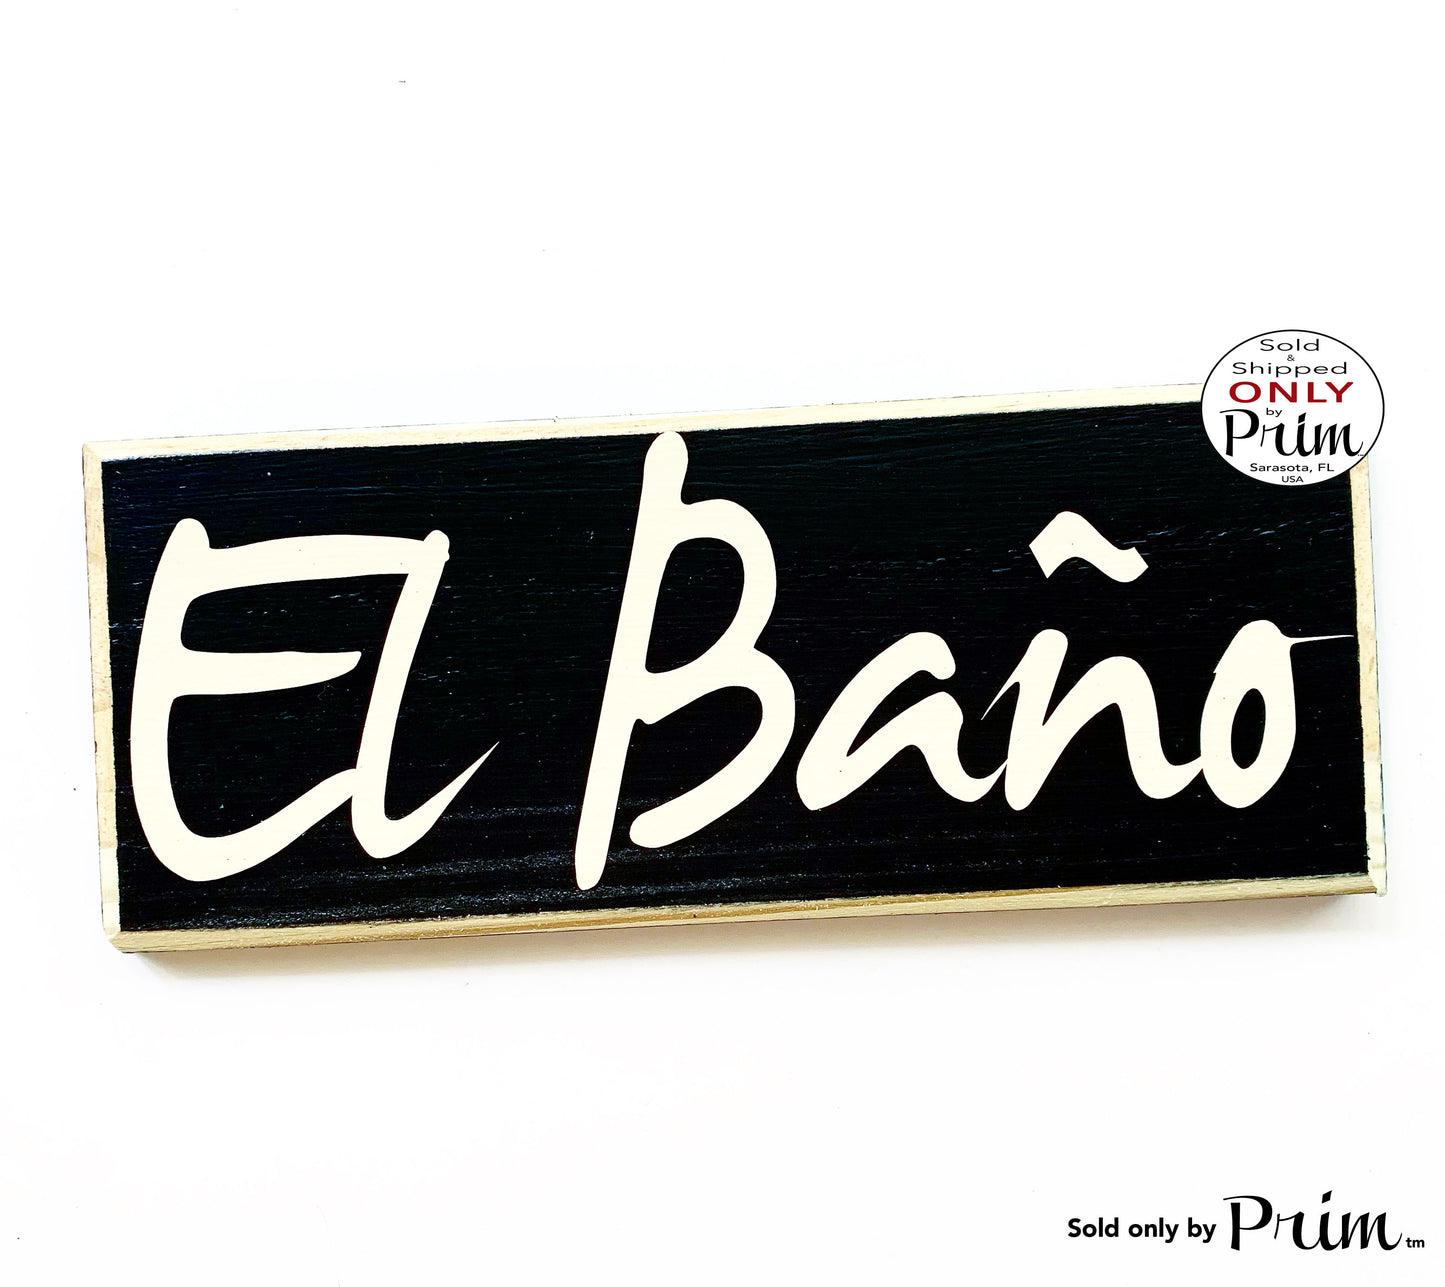 Designs by Prim 10x4 El Bano Custom Wood Sign Spanish Restroom Spain Mexico Bathroom WC Loo Powder Room Wall Door Plaque